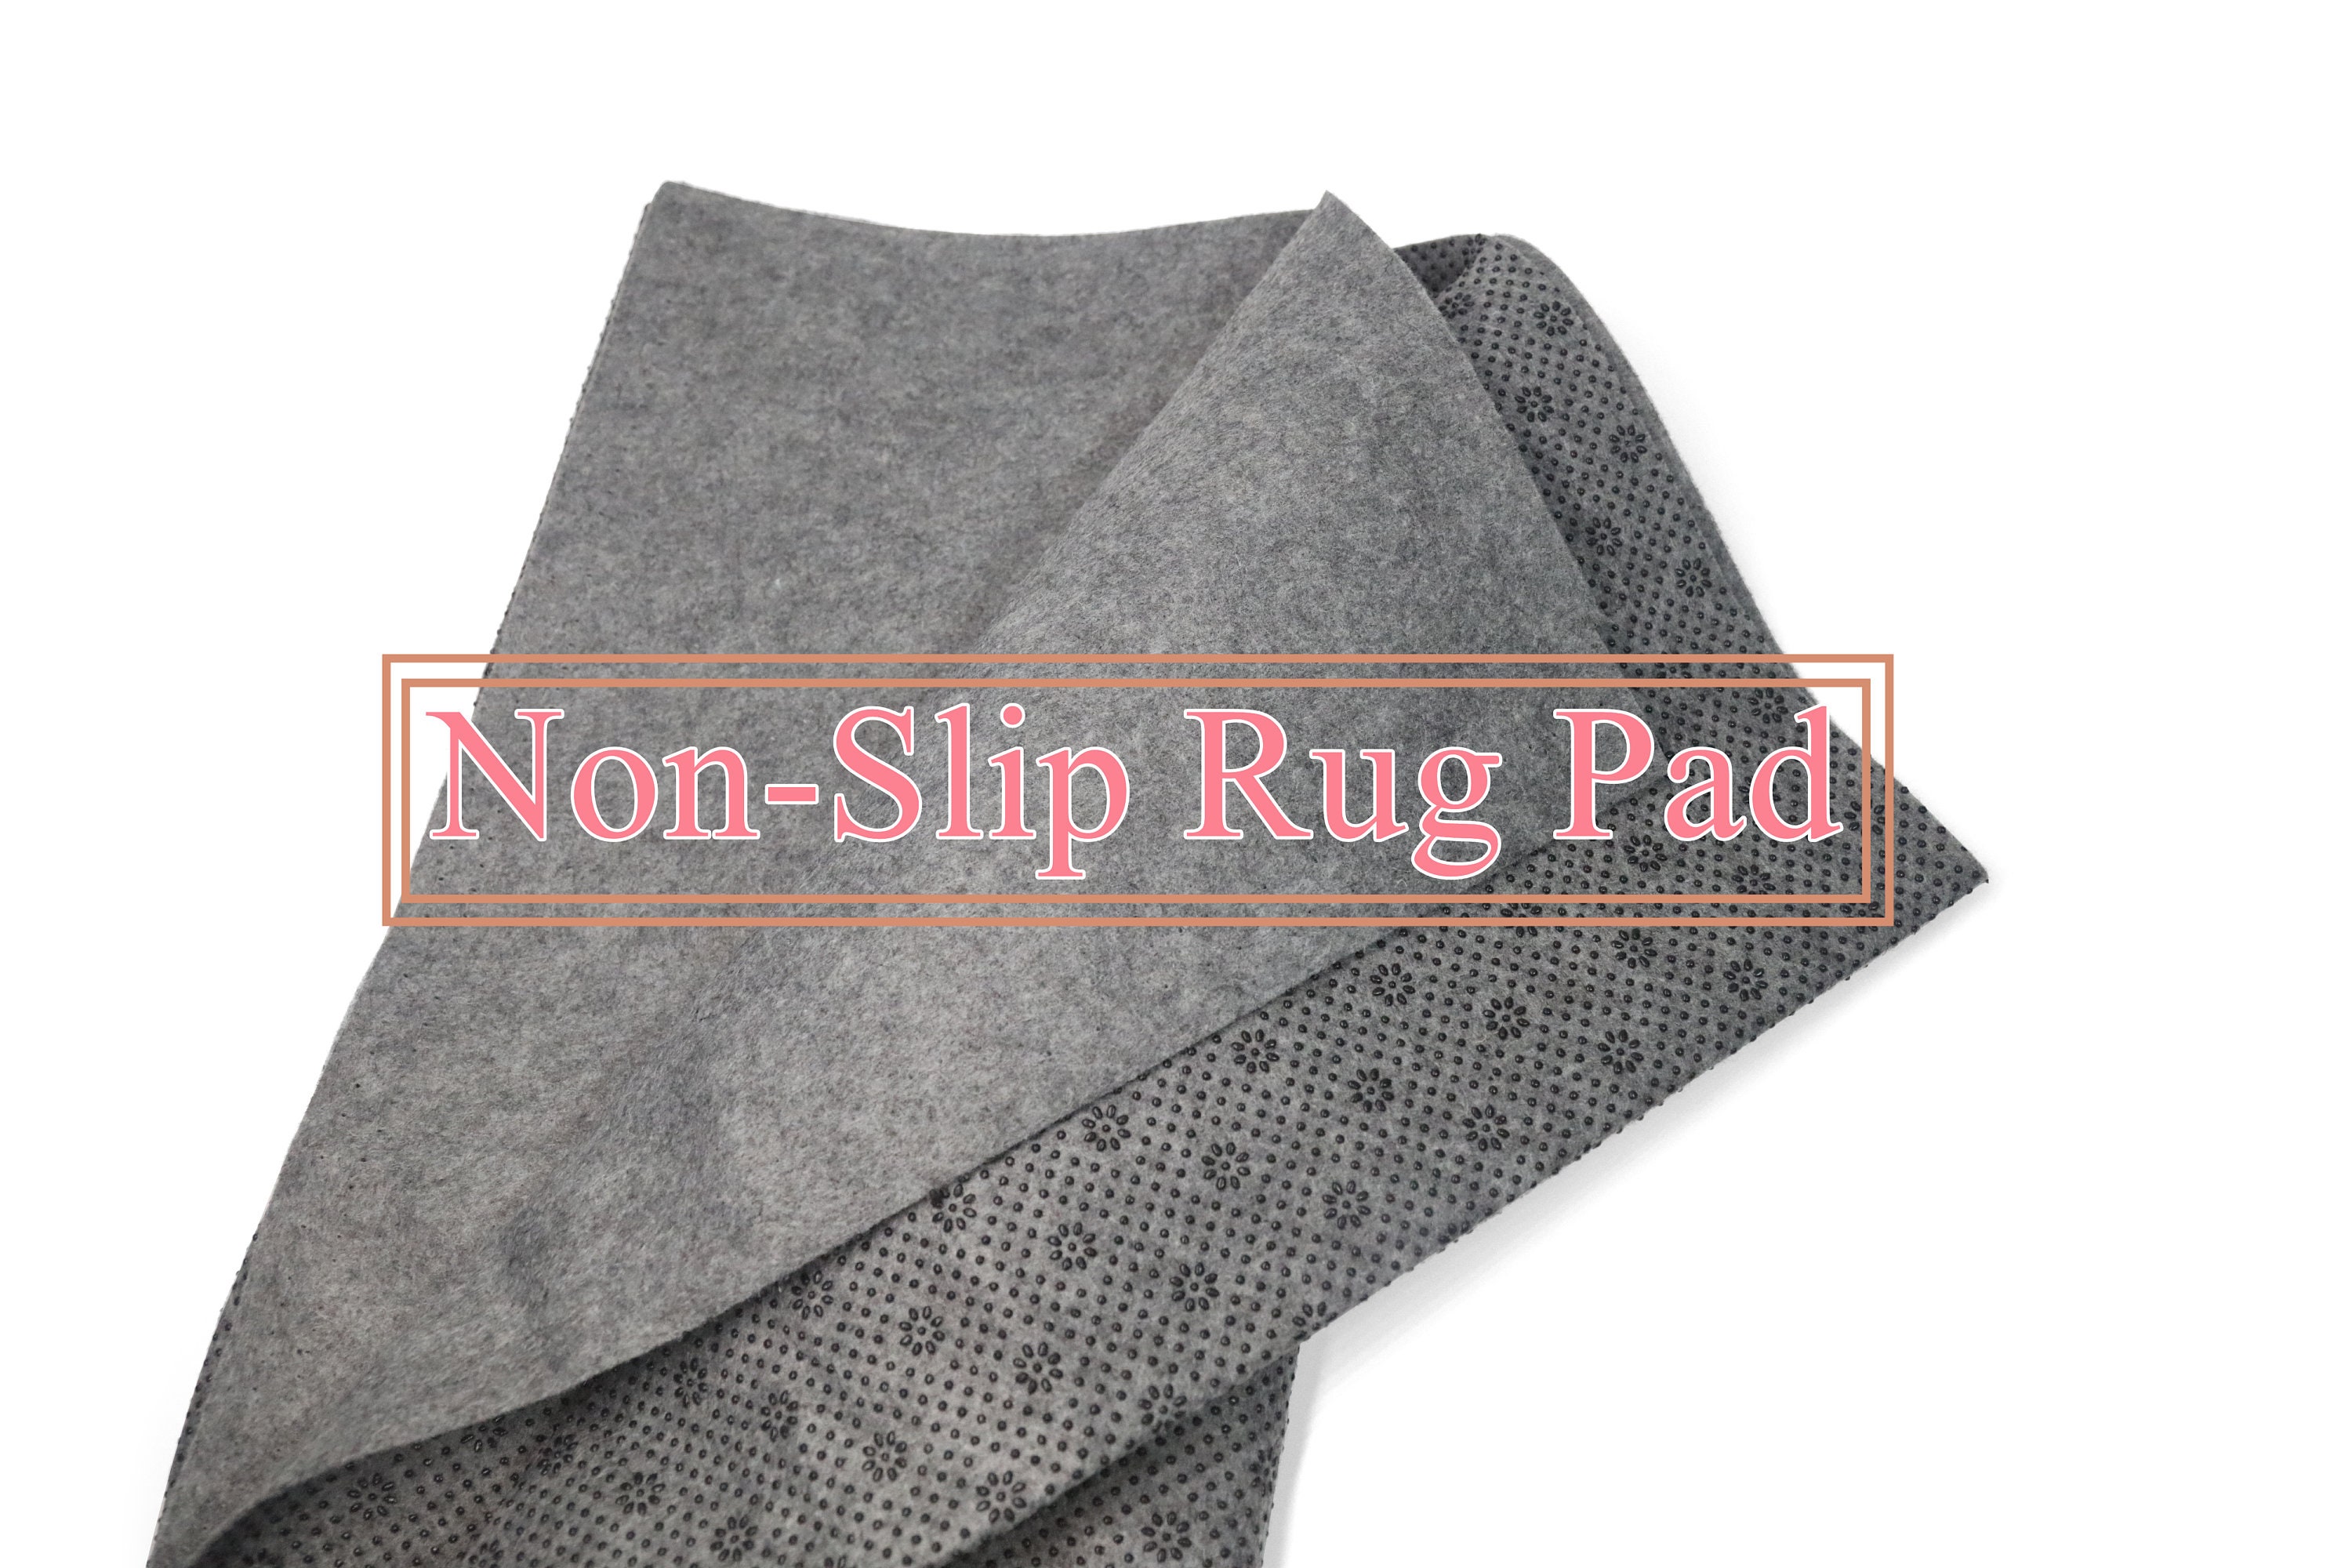 Handmayk Anti-Slip Secondary Tufting Fabric